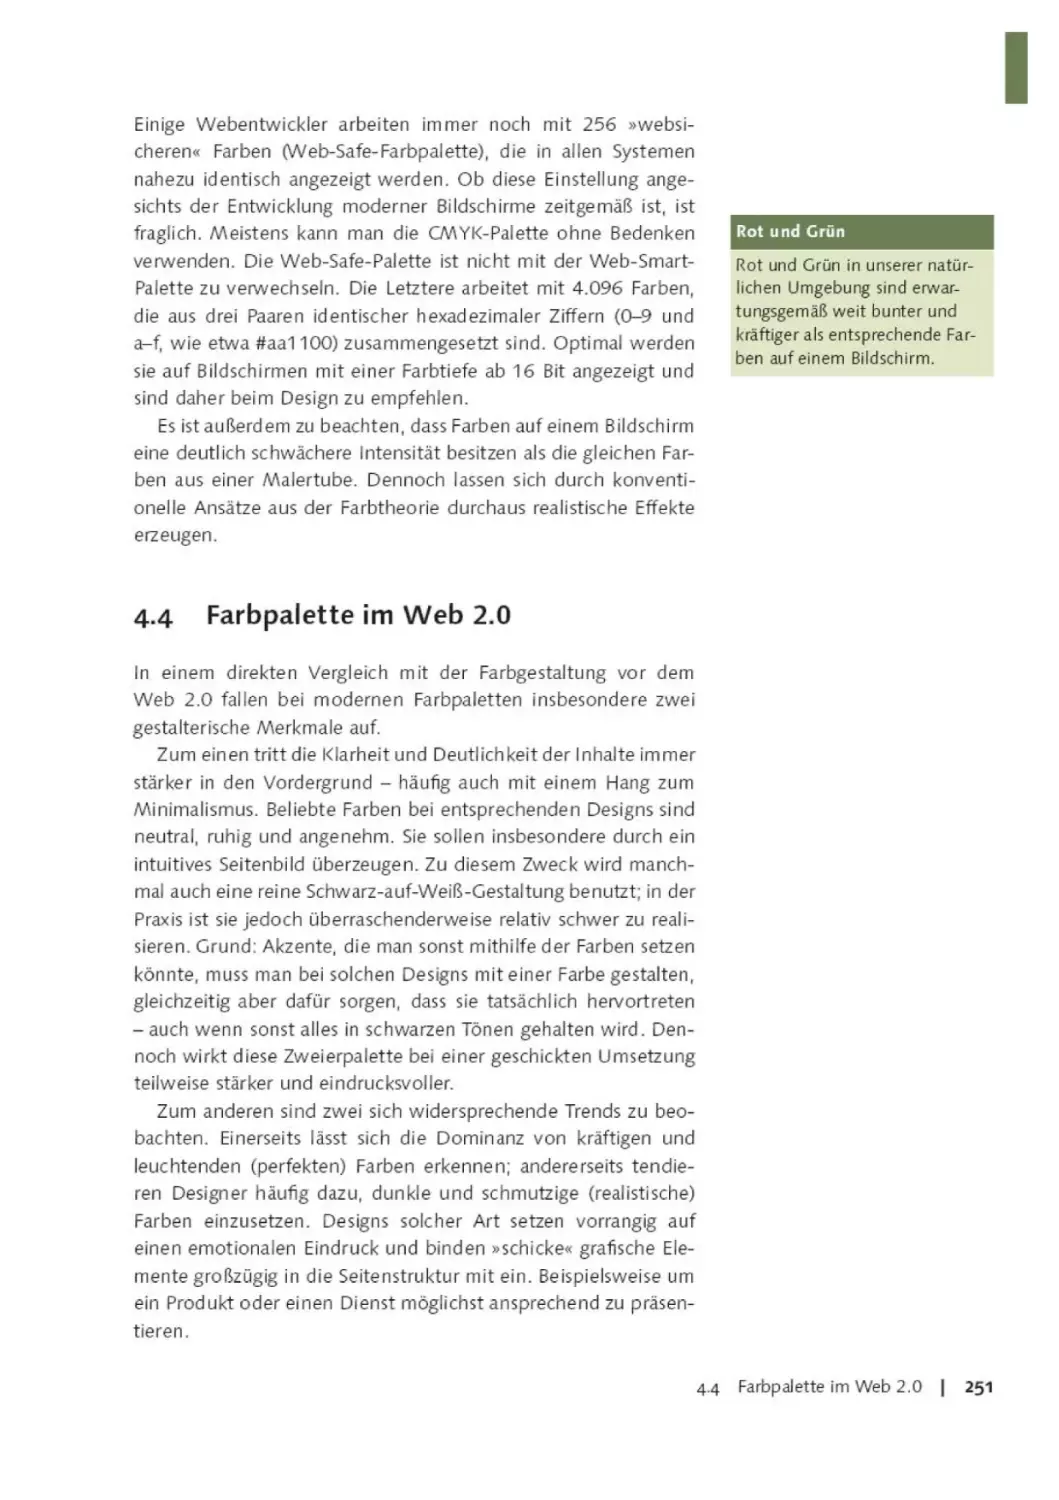 4.4       Farbpalette im Web 2.0